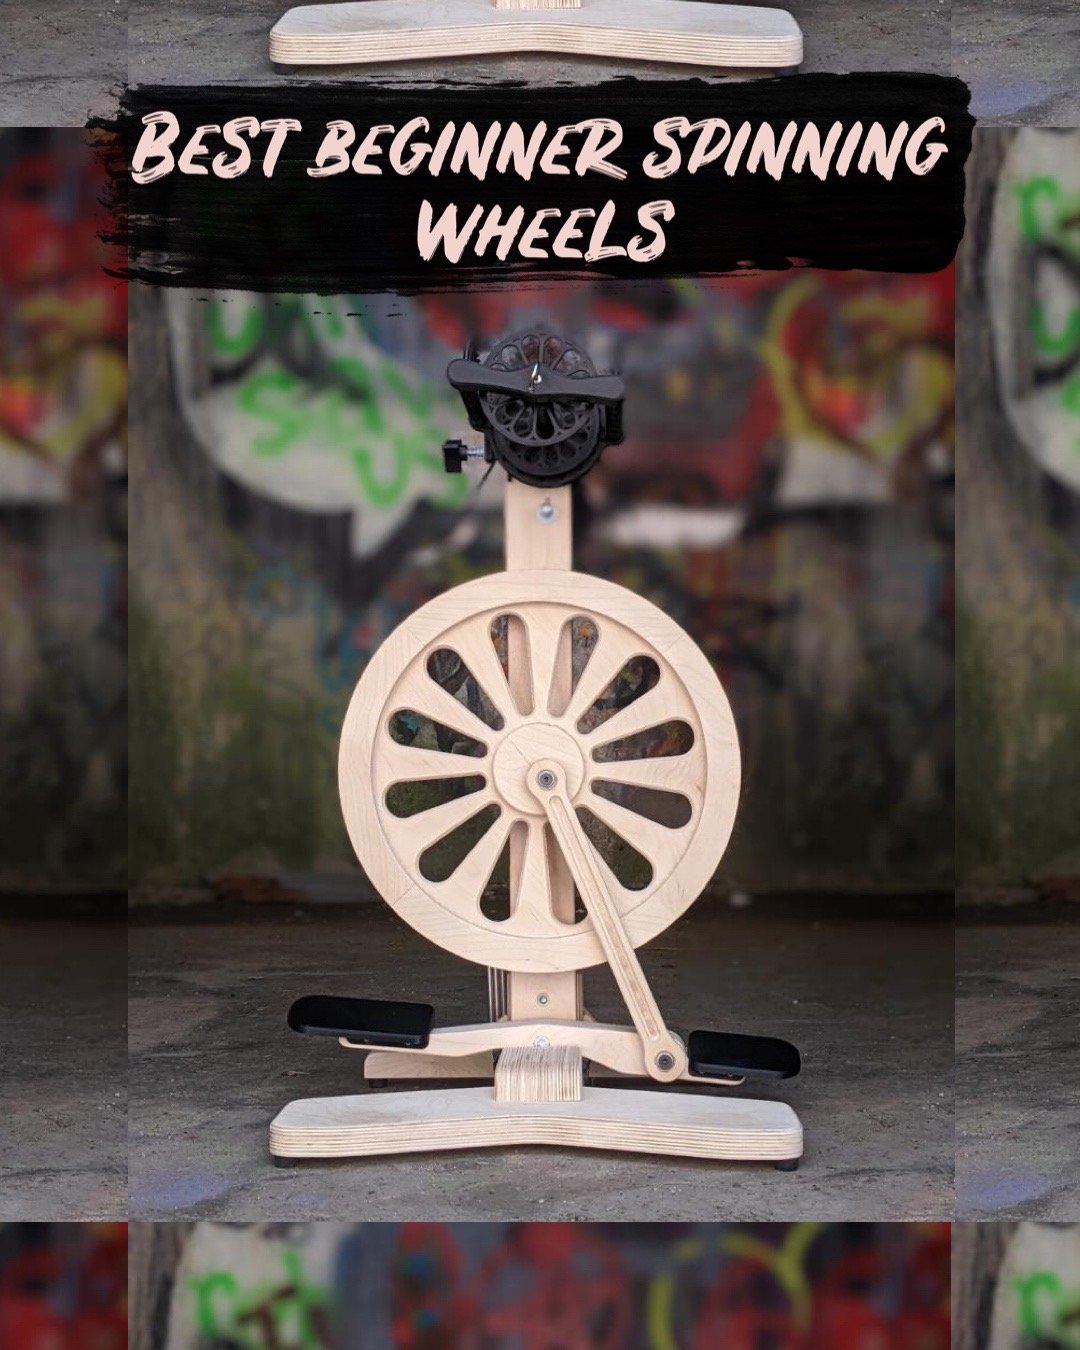 First spin so far on my diy wheel : r/Handspinning